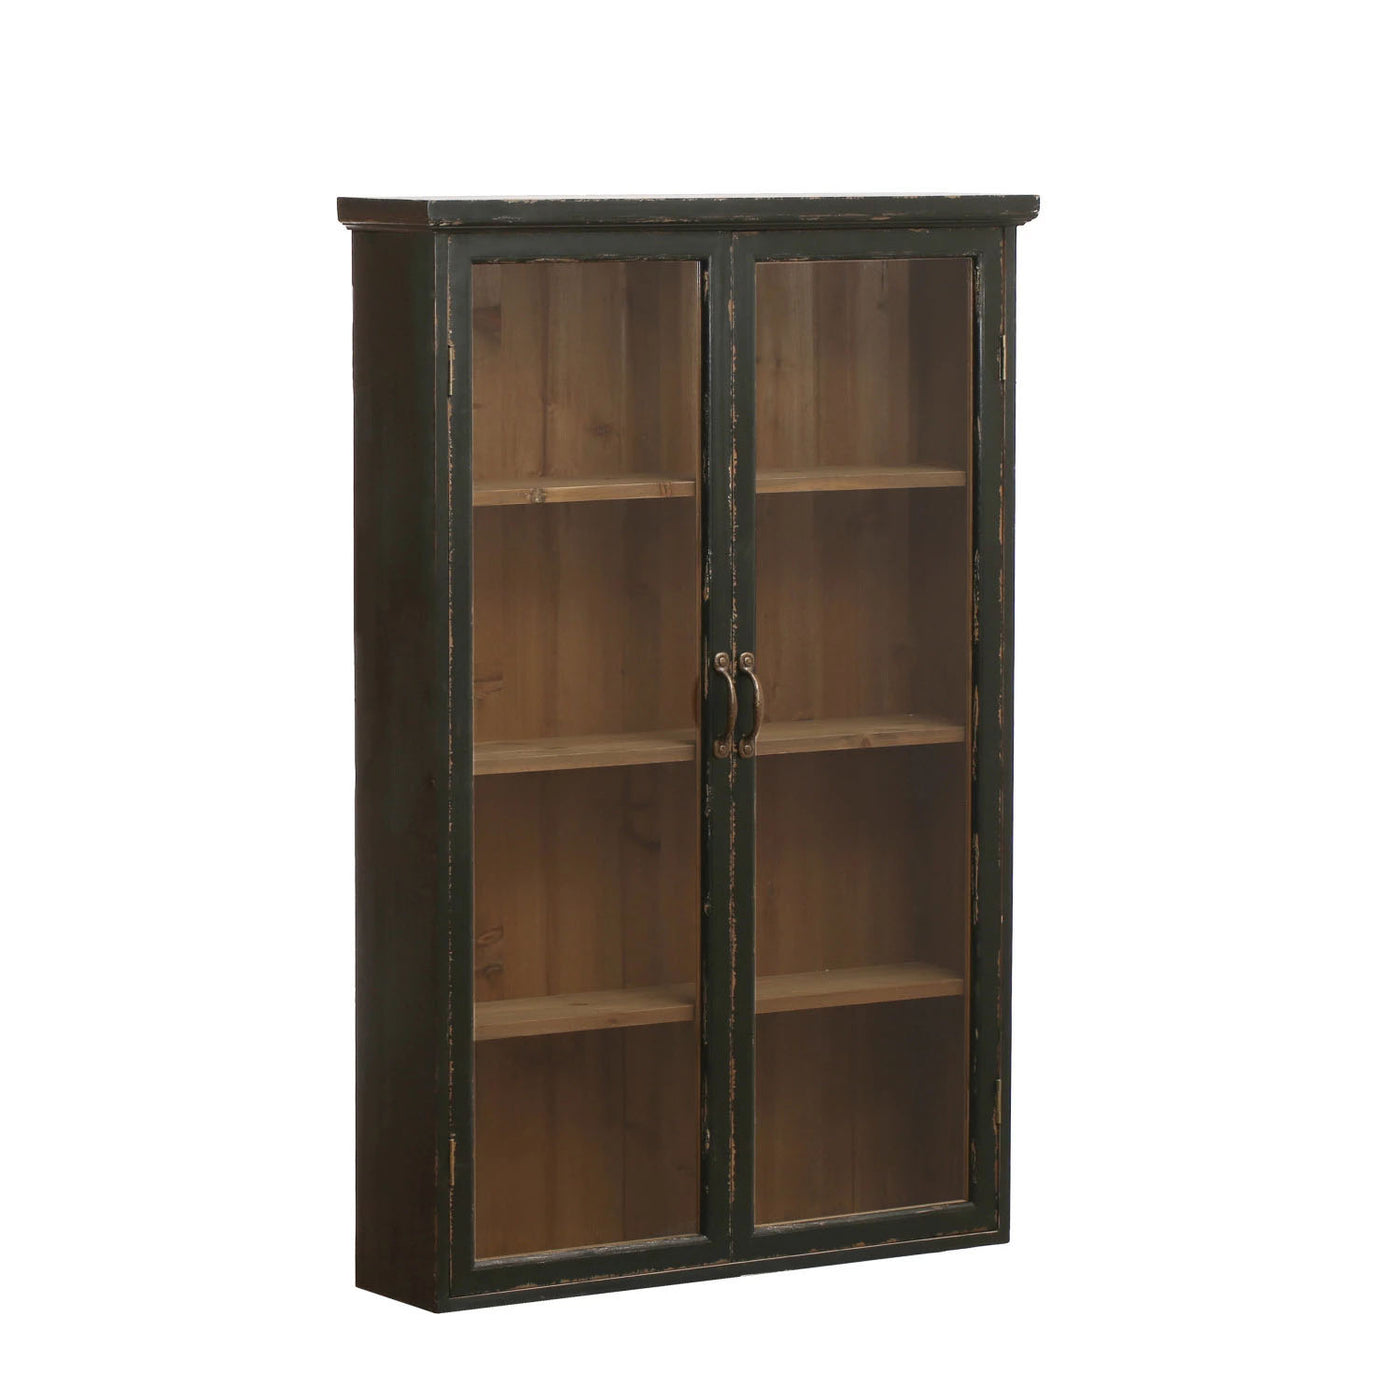 Rustic Pantry Cabinet - Hangs or Sits